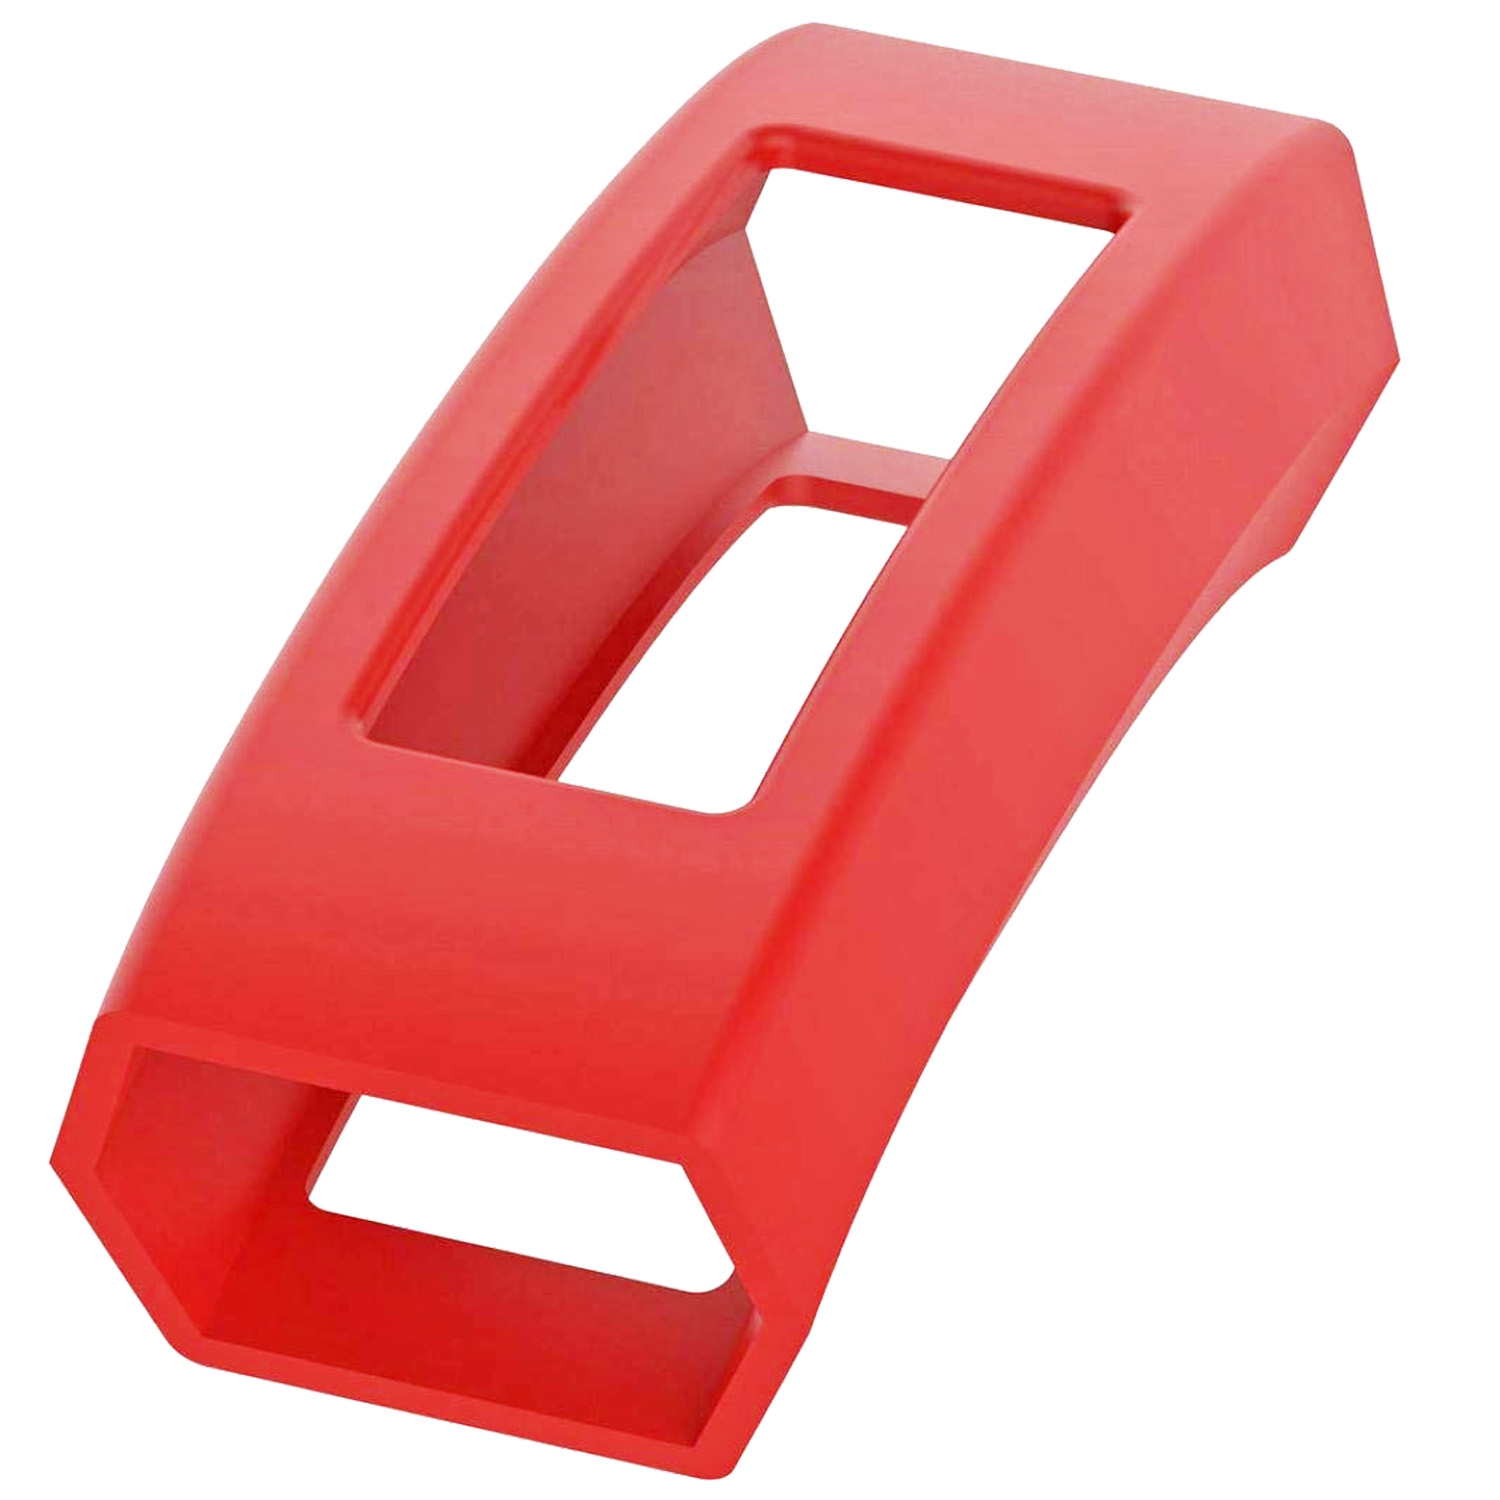 StrapsCo Silicone Rubber Protective Case Cover for Fitbit Alta & Alta HR - Red